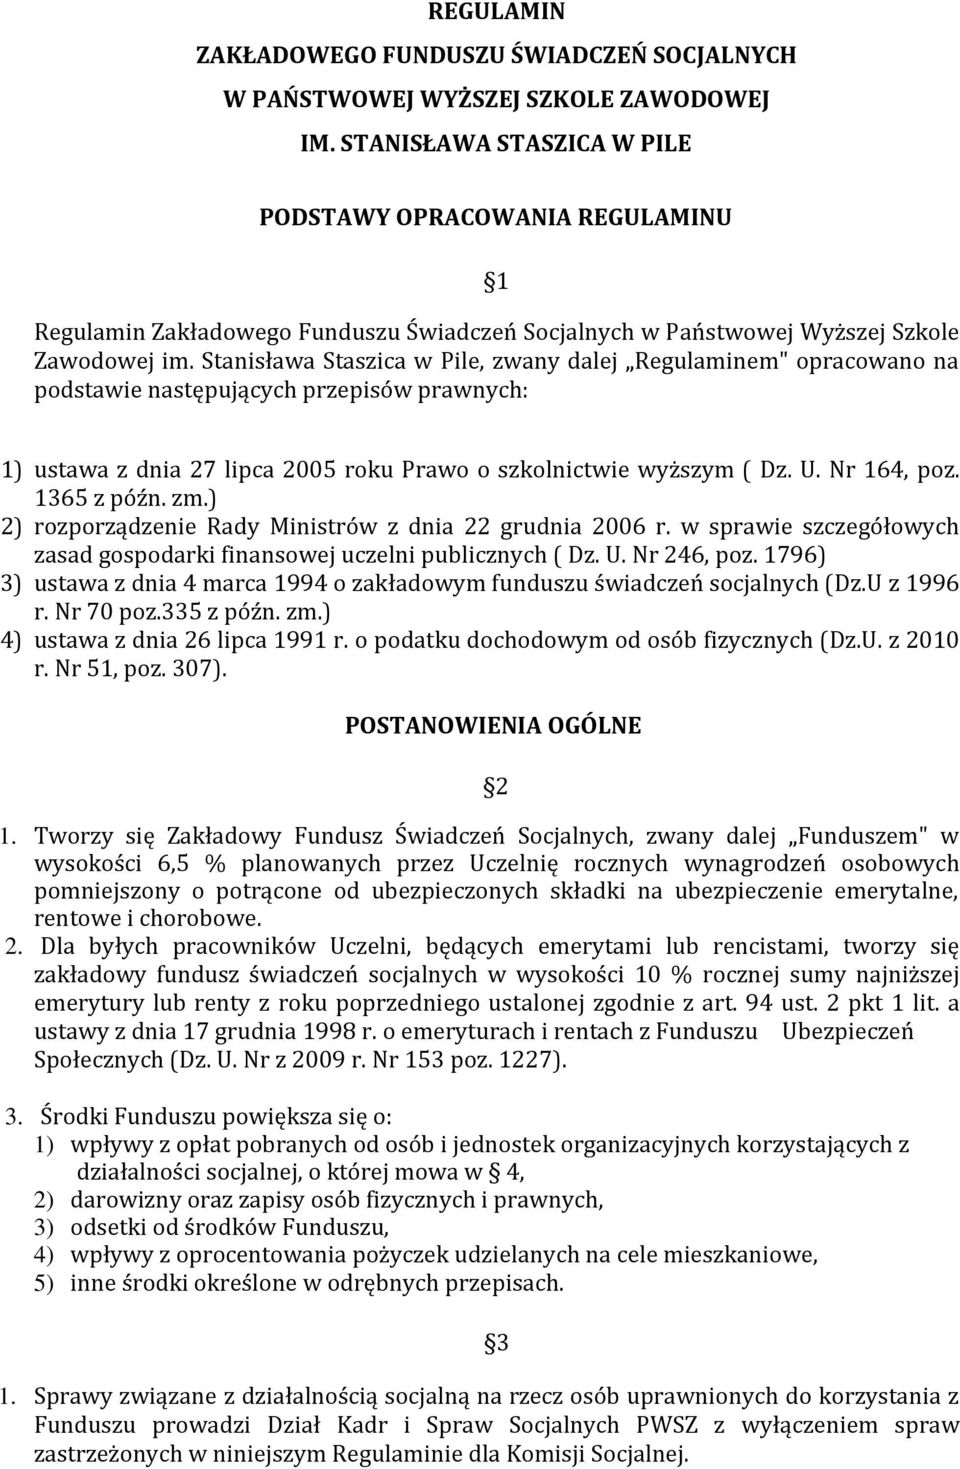 Stanisława Staszica w Pile, zwany dalej Regulaminem" opracowano na podstawie następujących przepisów prawnych: 1) ustawa z dnia 27 lipca 2005 roku Prawo o szkolnictwie wyższym ( Dz. U. Nr 164, poz.